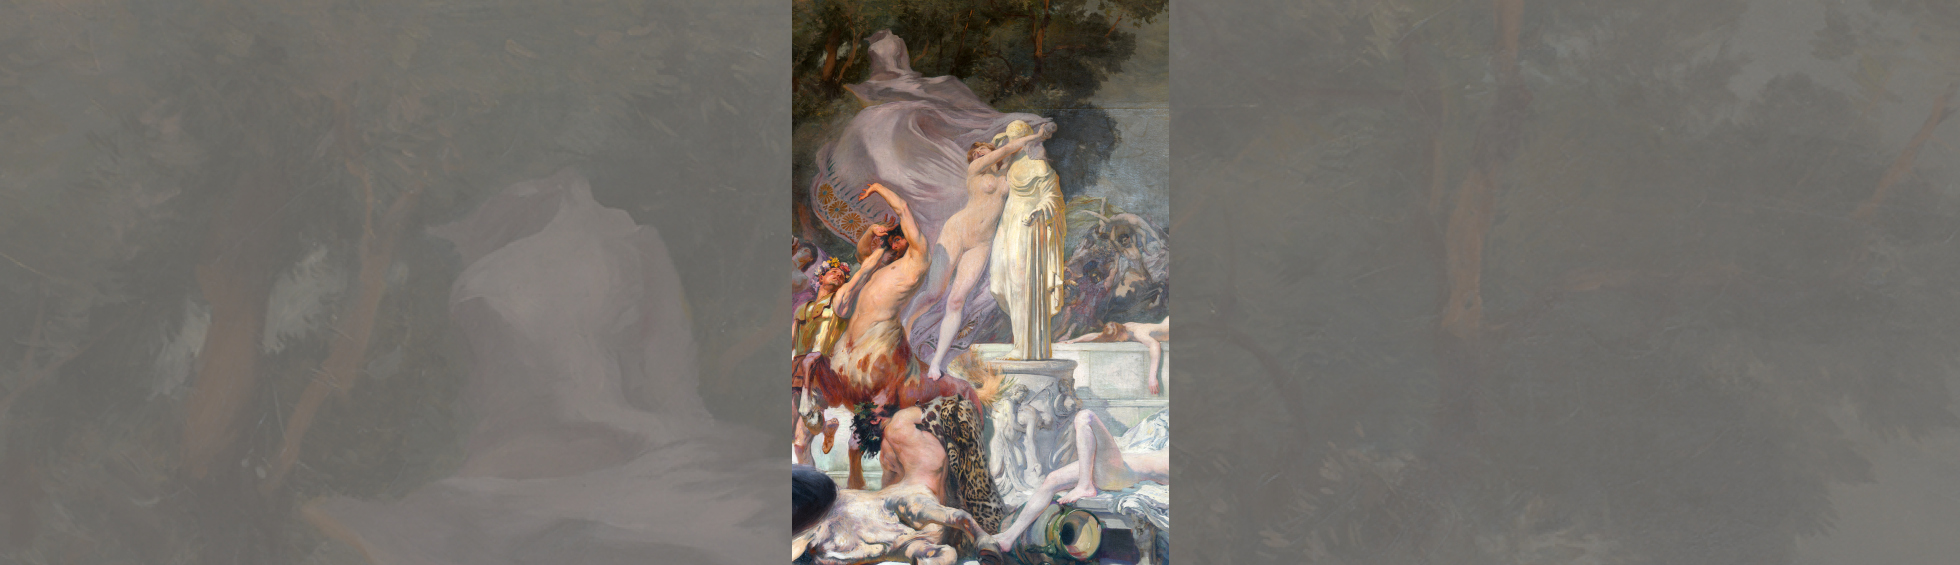 Paul Jean GERVAIS (1859 - 1944) Les centaures; enlèvement des Plapithes, 1906(détail). Perpignan, musée d'art Hyacinthe Rigaud. Photo Musée d'art Hyancinthe Rigaud/ Pascale Marchesan